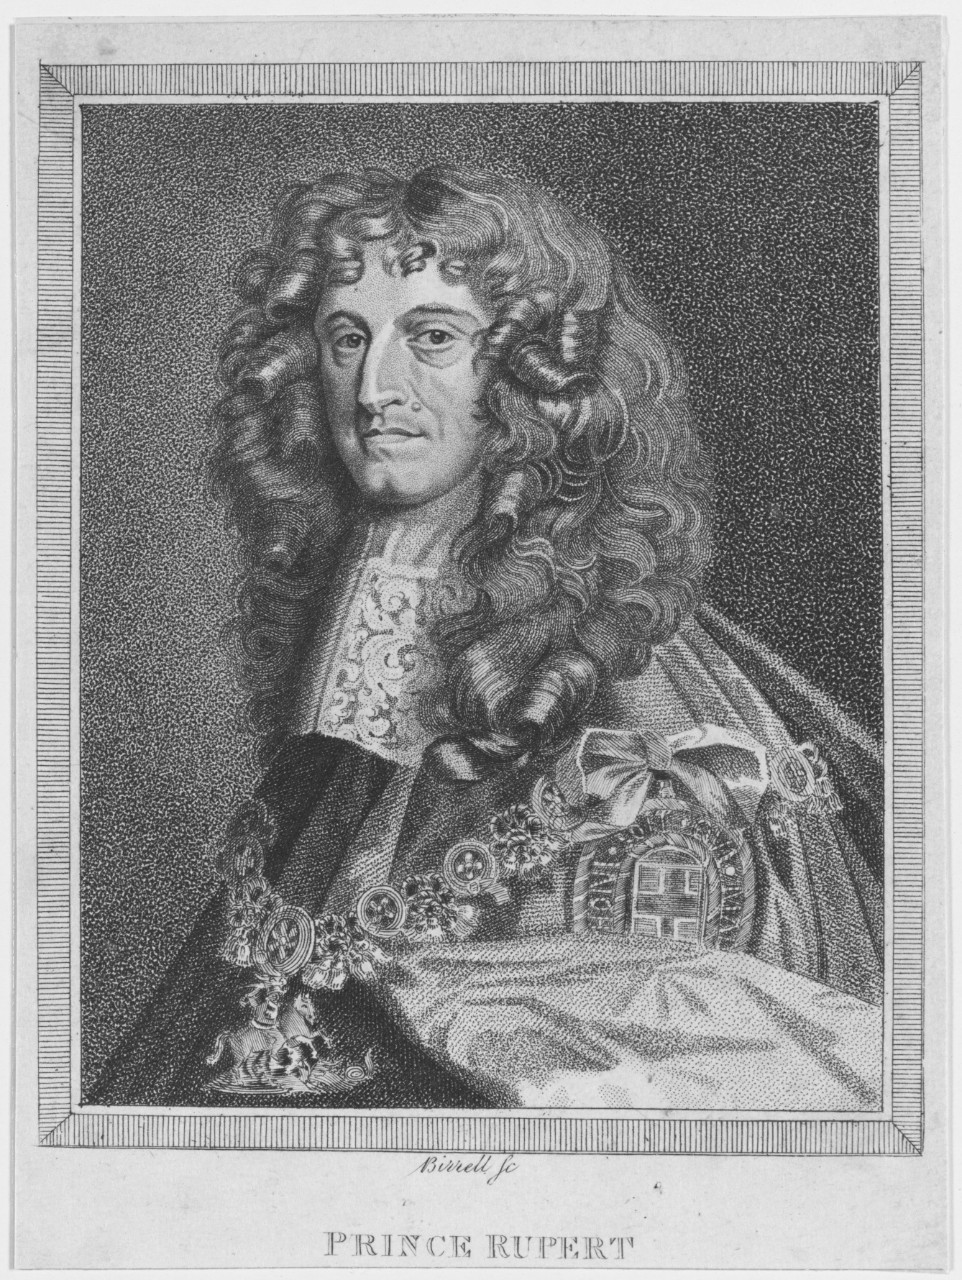 Prince Rupert, Prince of Bavaria. 1609-1682